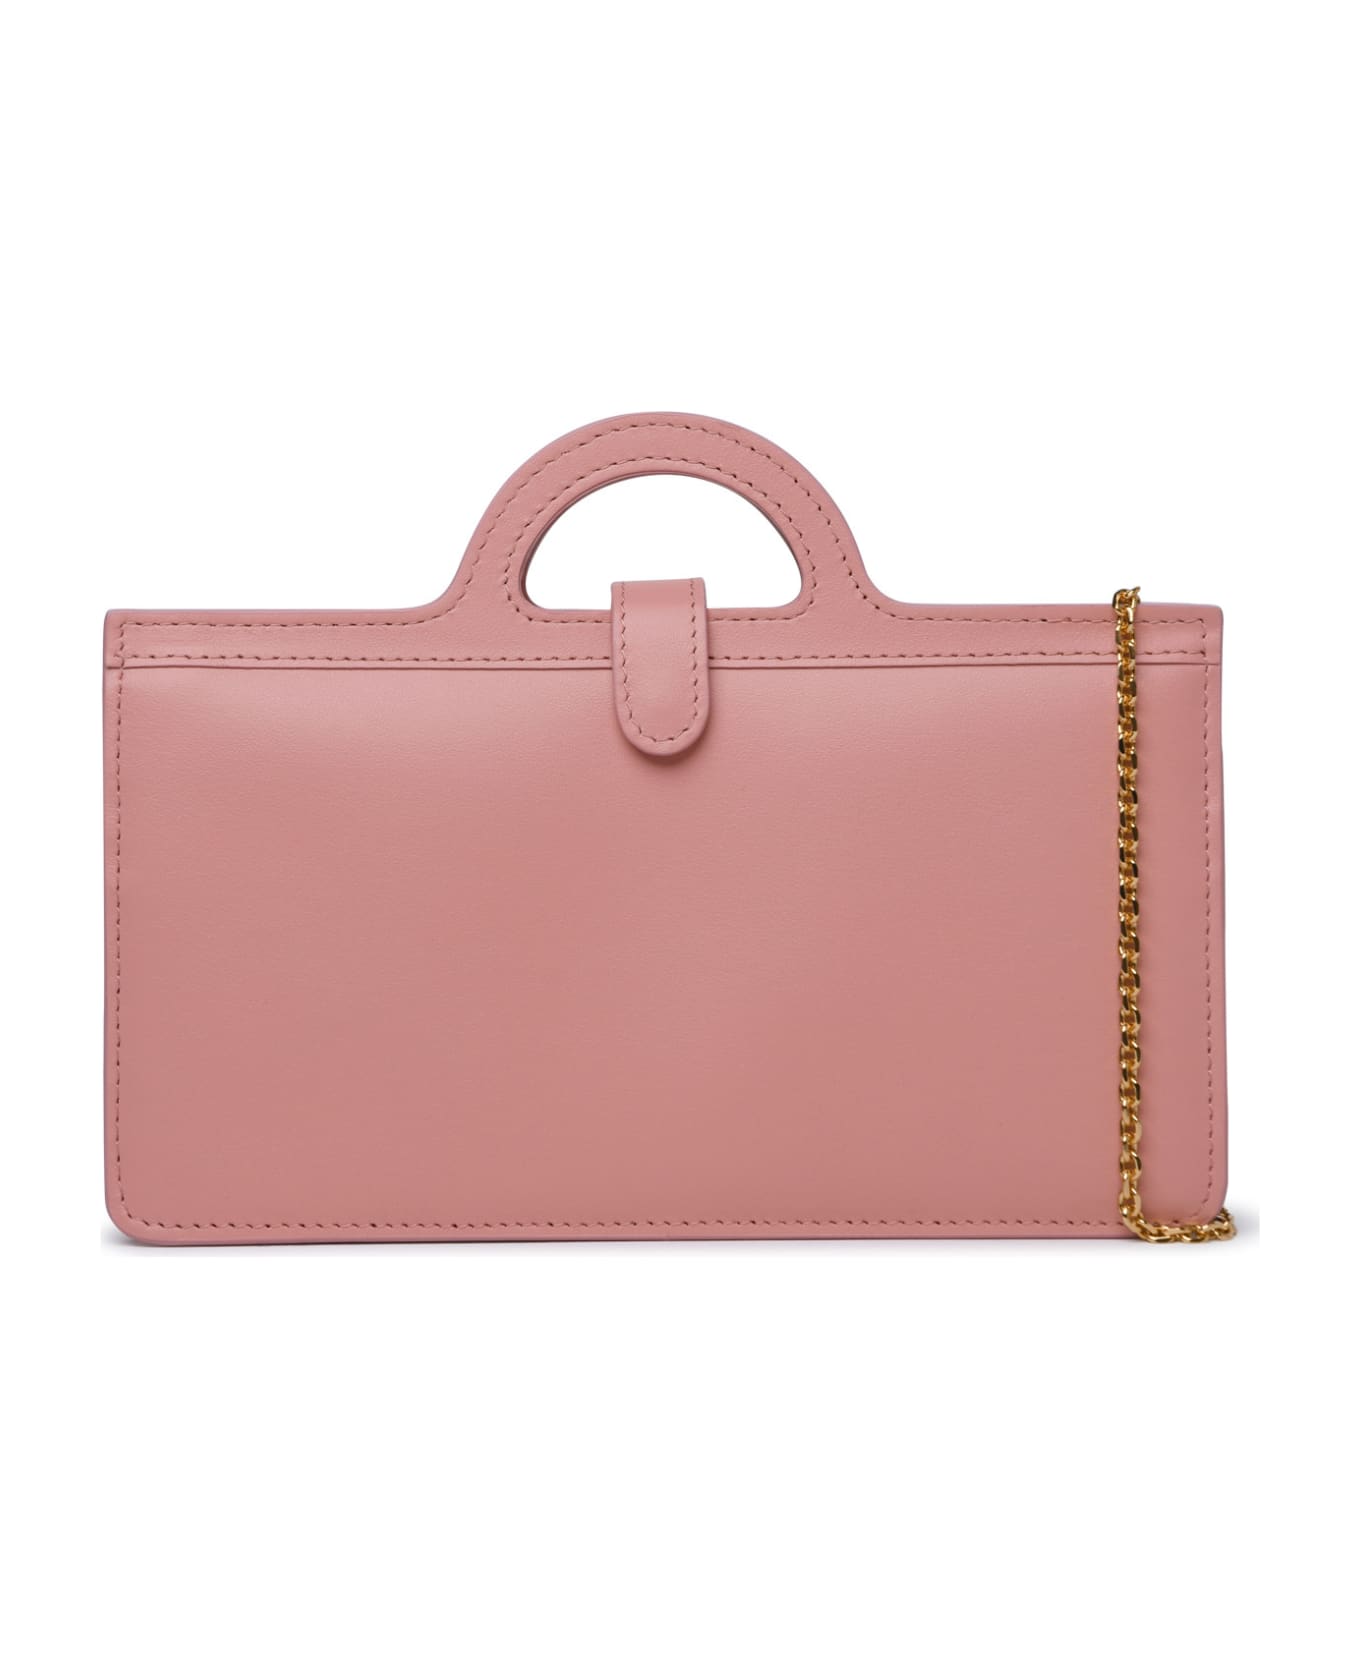 Marni 'tropicalia' Pink Calf Leather Bag